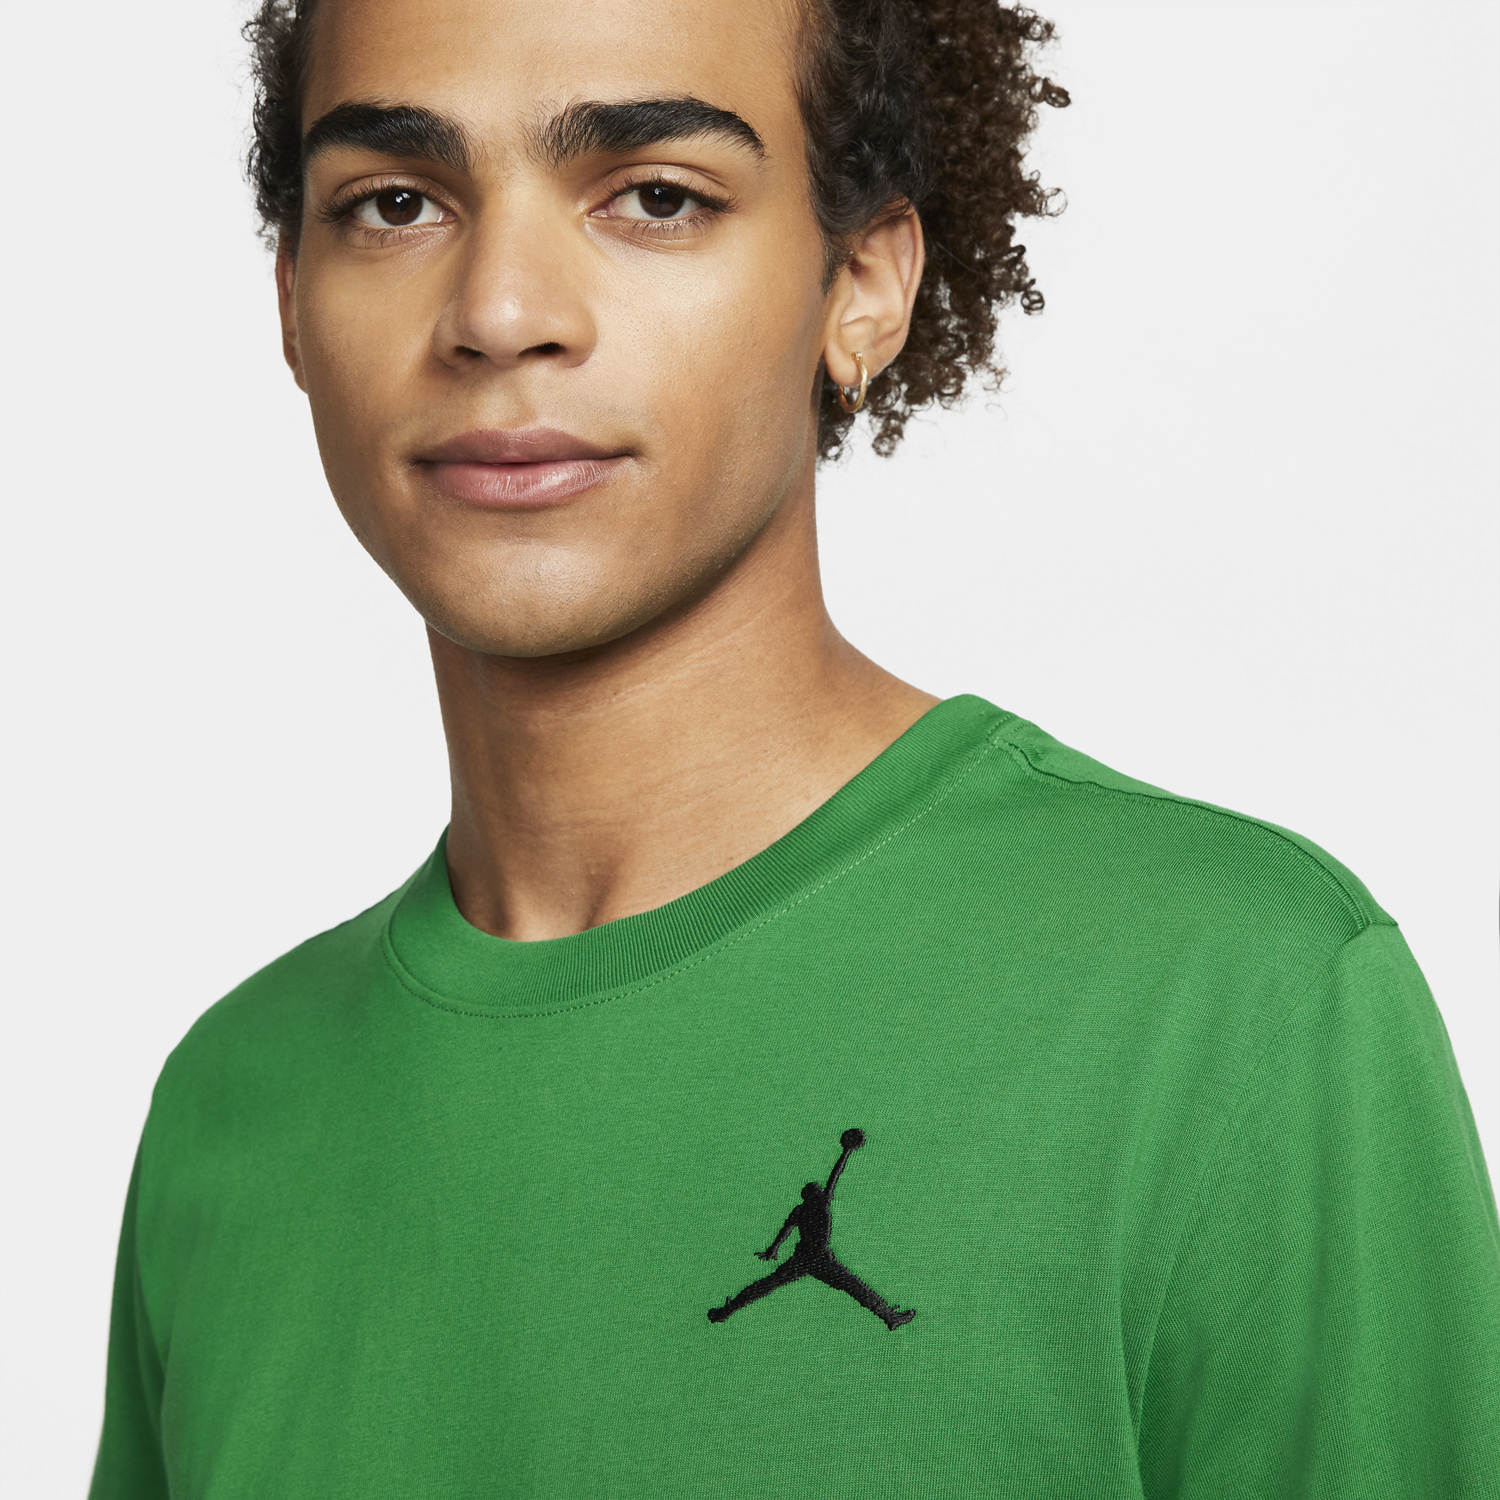 Air Jordan 3 Pine Green Shirts Hats Clothing Outfits